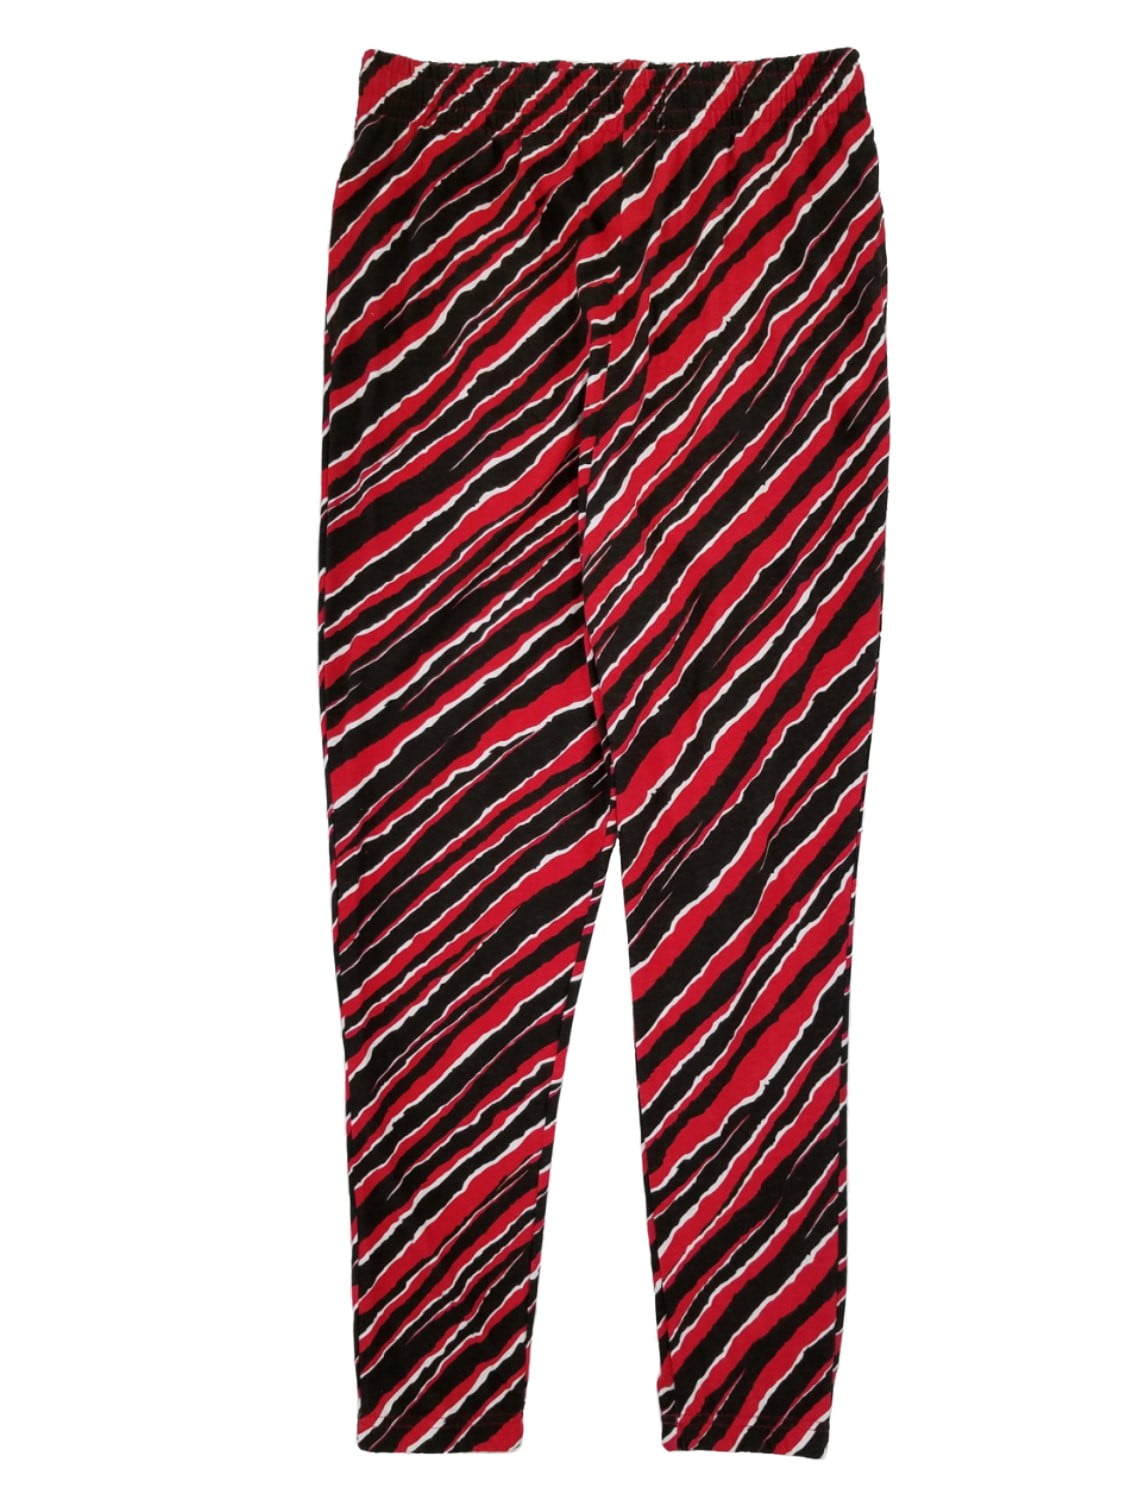 BershkaBershka wide leg PANTS with side stripe in red  WEAR